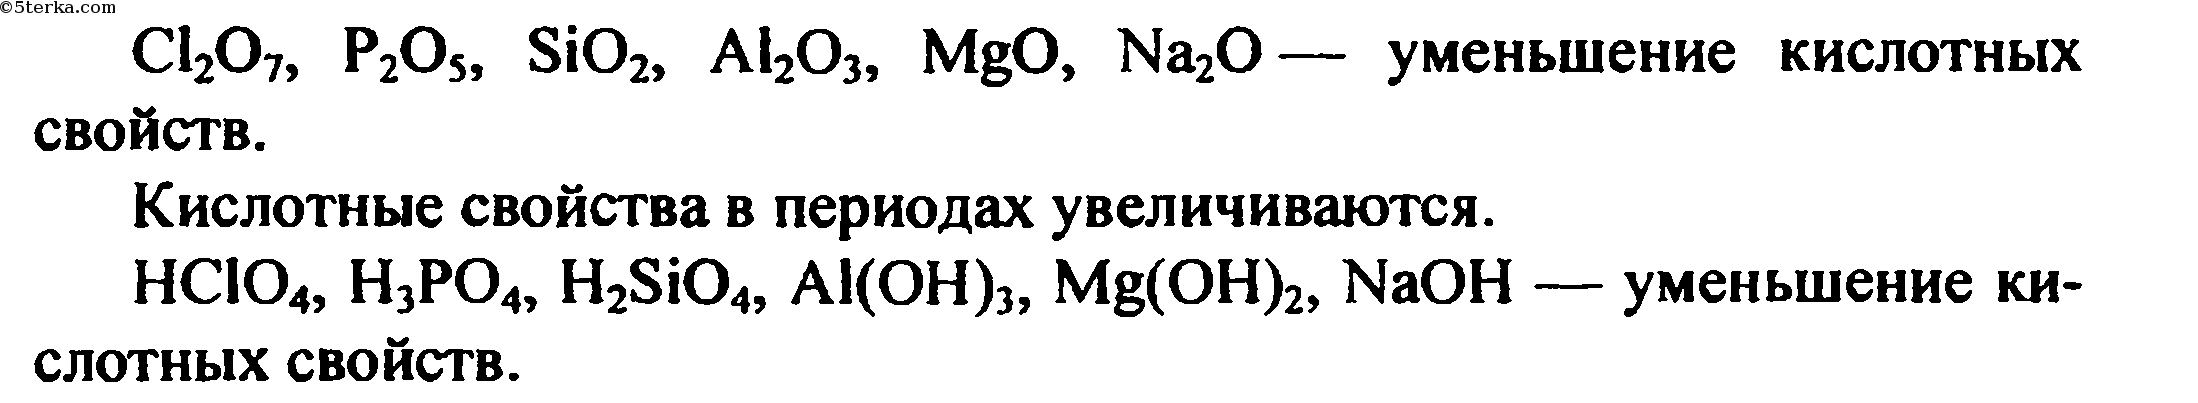 Формула гидроксида sio2